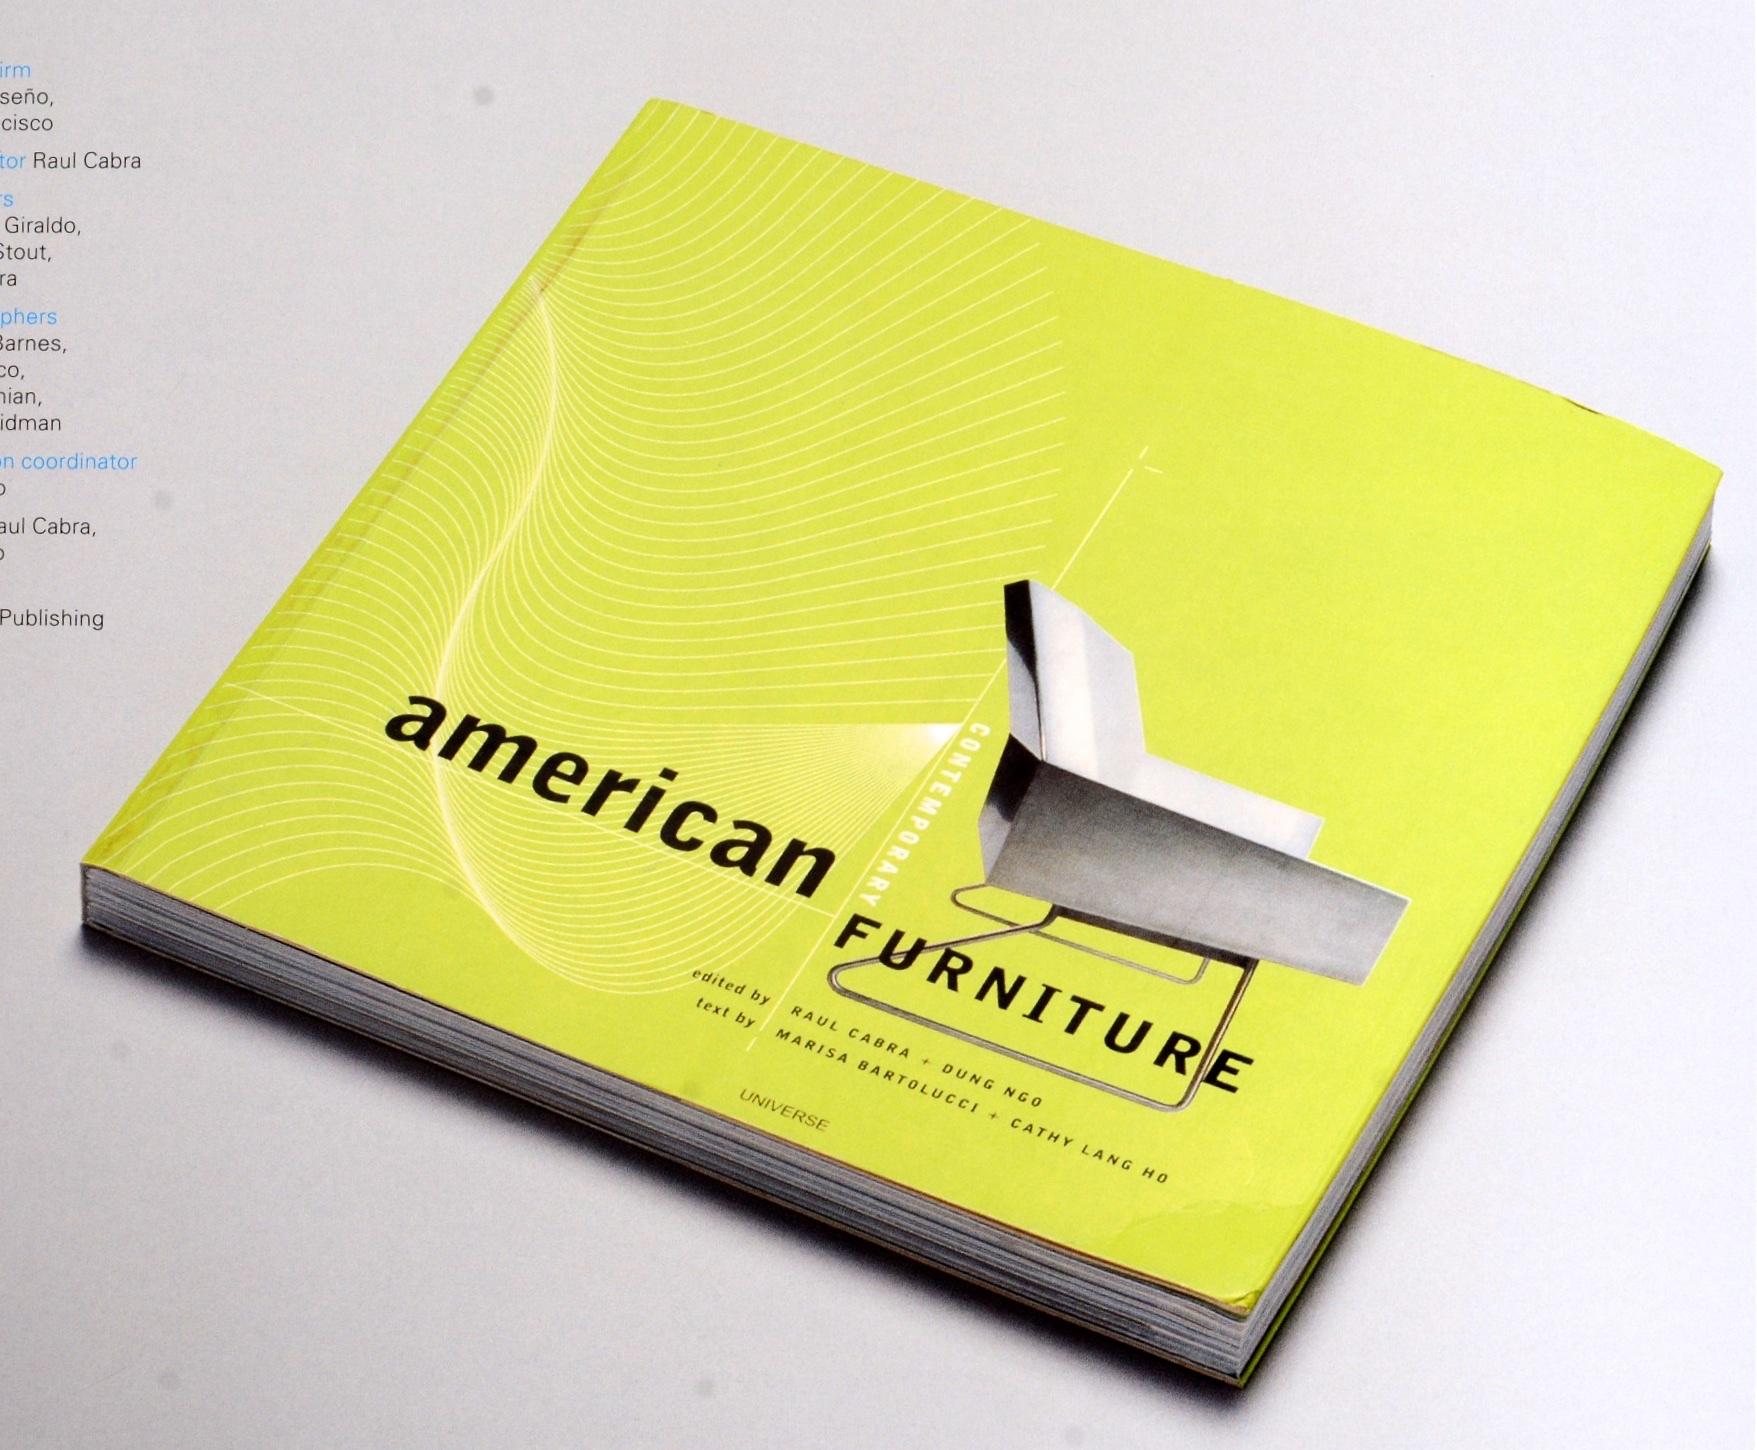 365 : Aiga Year In Design 22 par AIGA. New York, U.S.A. : American Institution of Graphic Arts, 2002. Première édition, 1ère impression, couverture souple. Chaque année, l'AIGA célèbre les meilleurs travaux de design des douze mois précédents dans